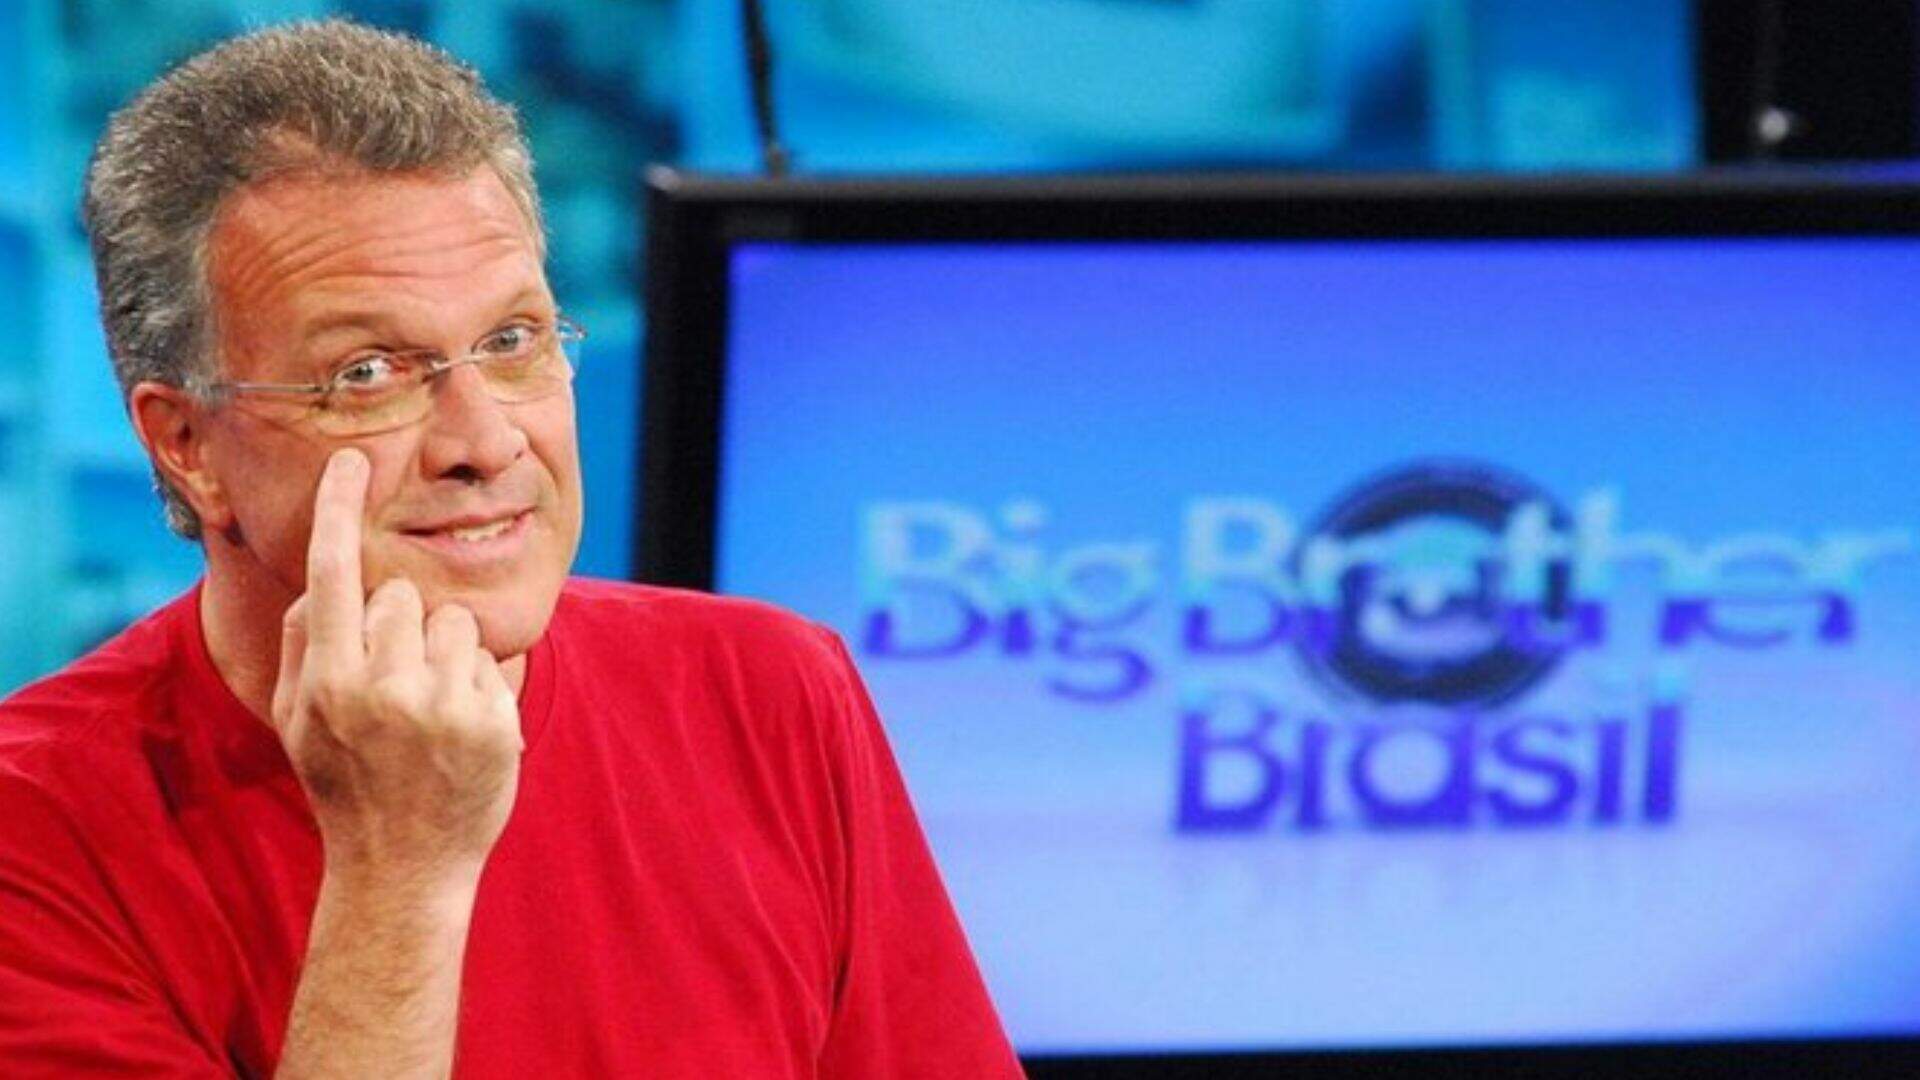 Ex-BBB choca ao revelar caso com Pedro Bial fora do reality show: “A gente se beijou” - Metropolitana FM